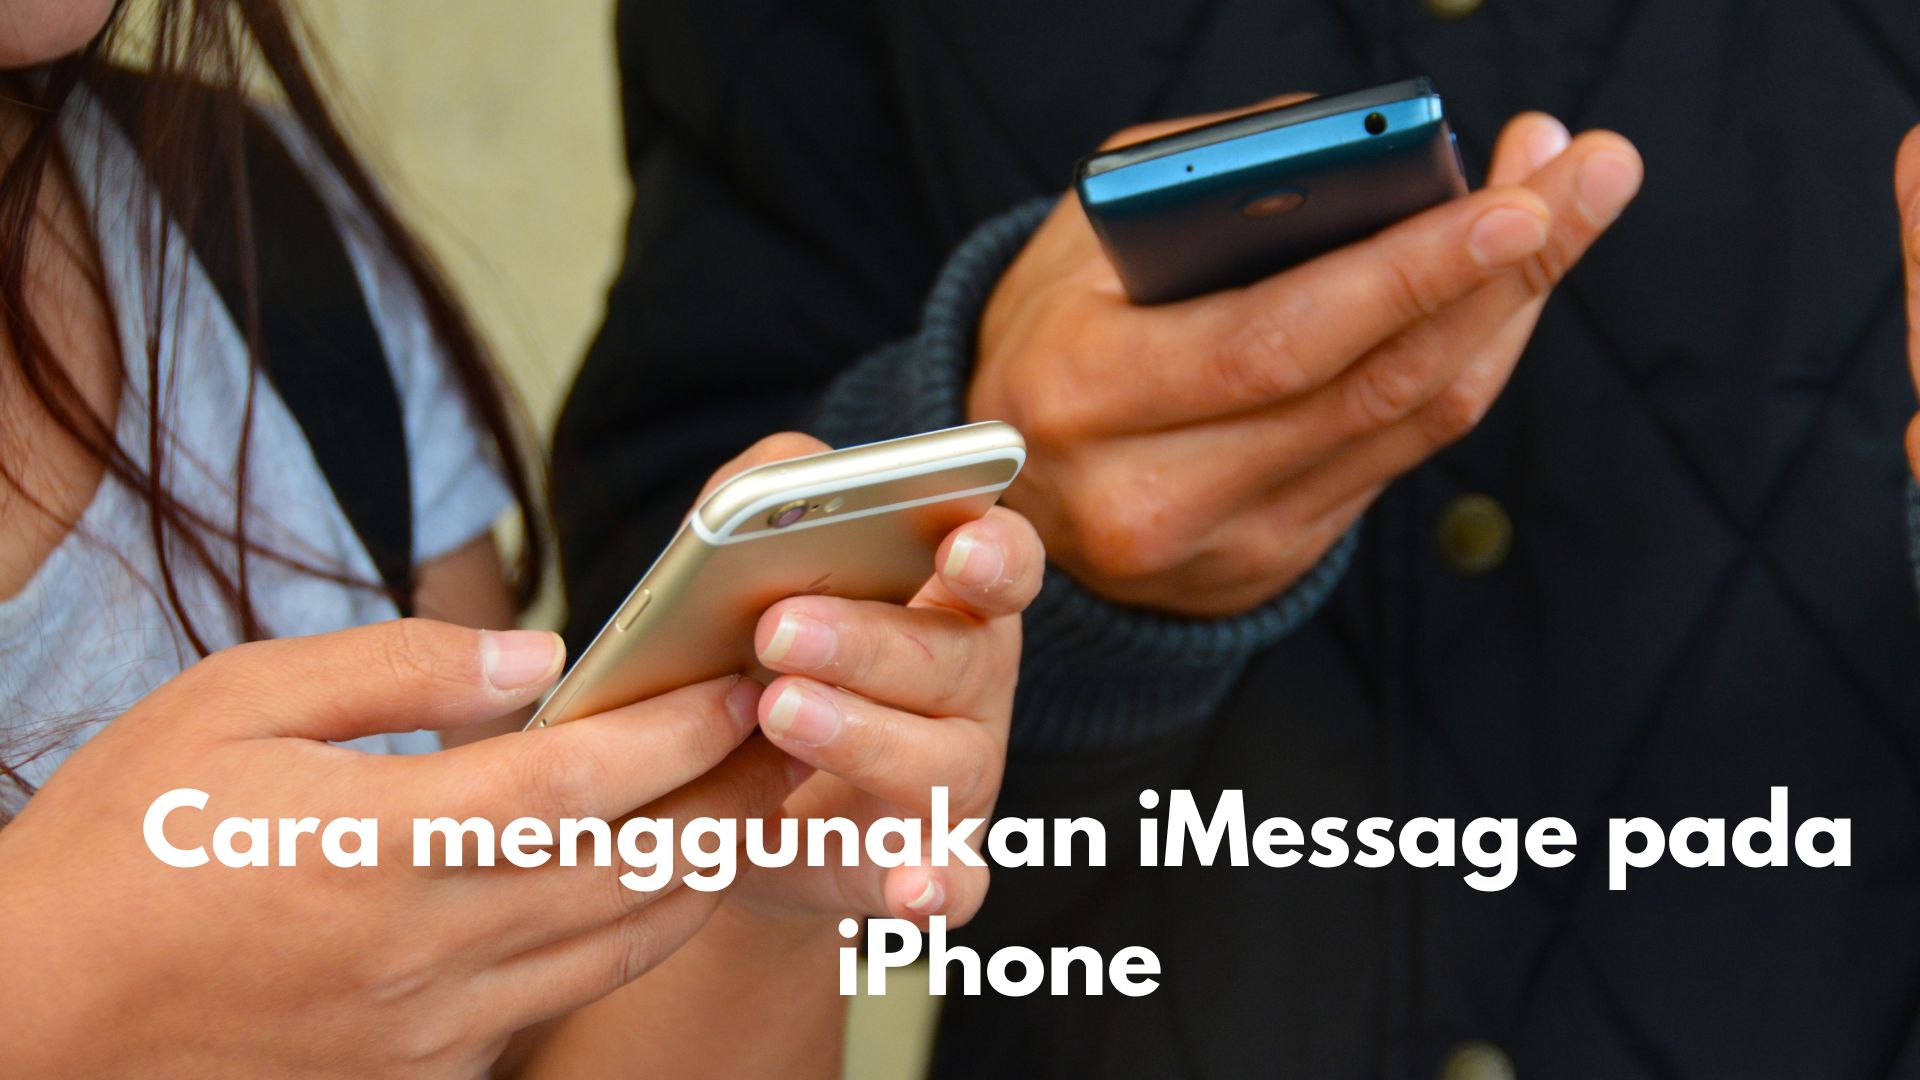 Cara menggunakan iMessage pada iPhone